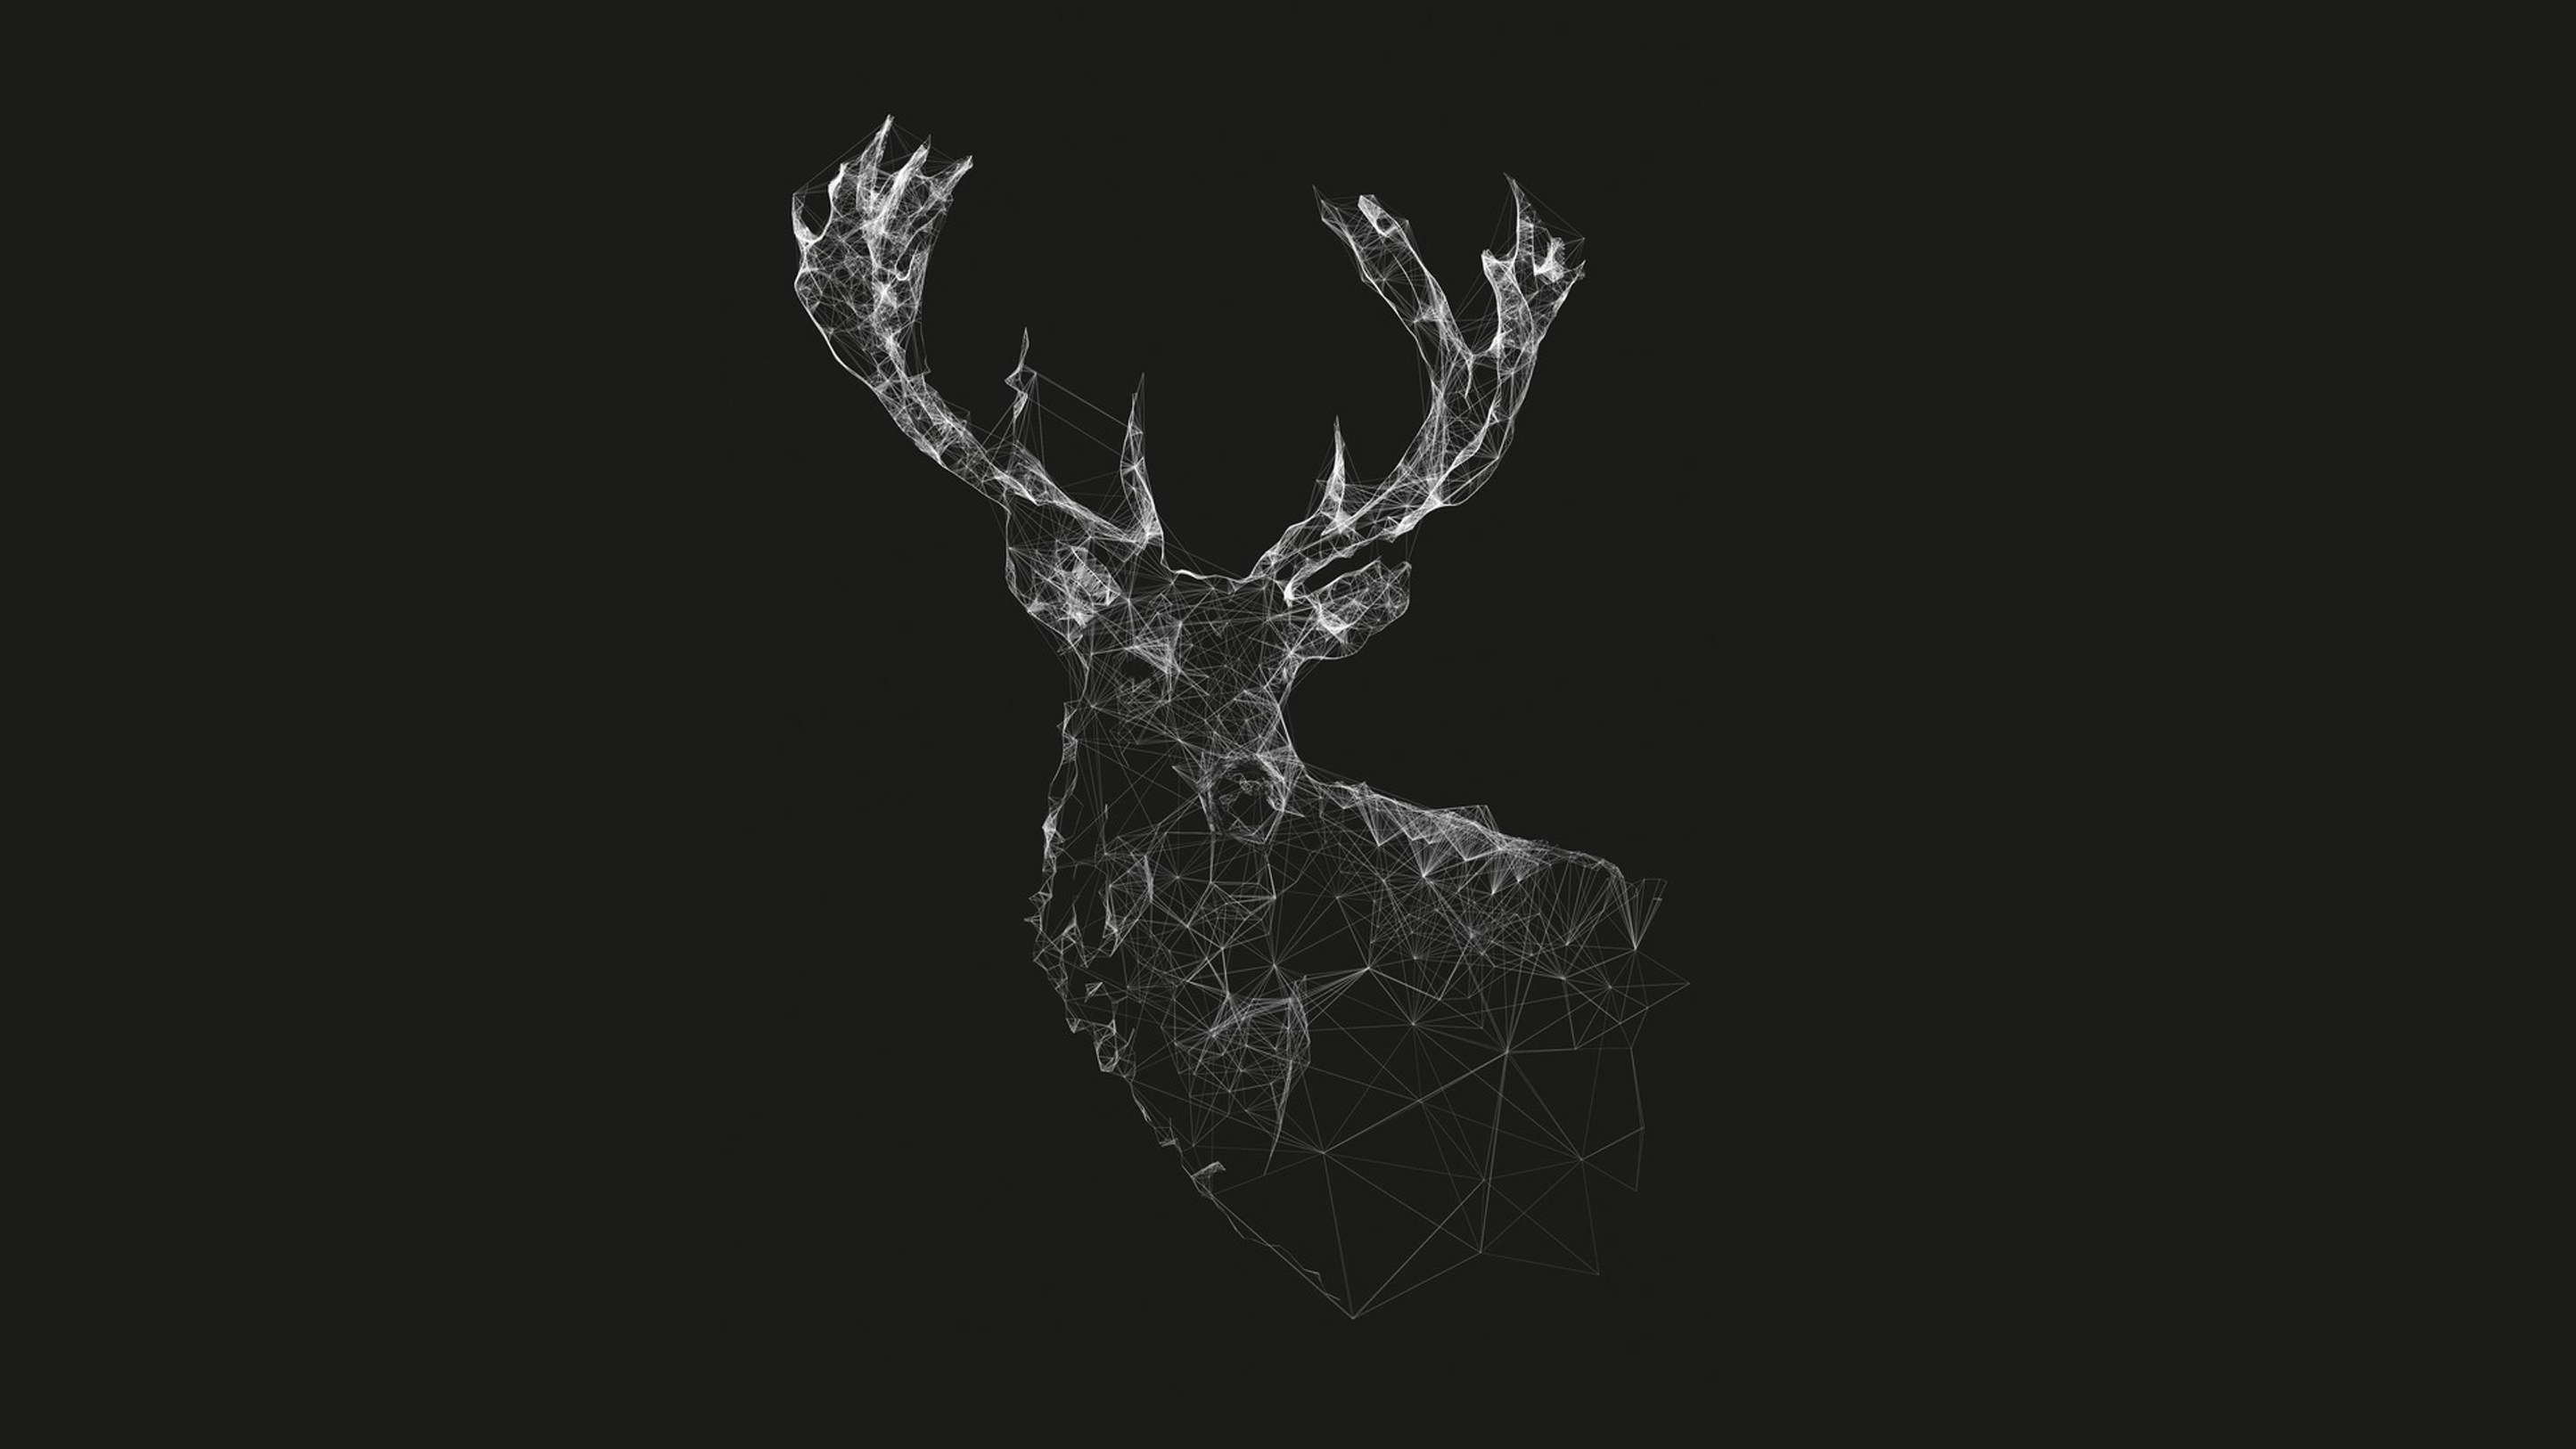 Wireframe Deer Head Graphic Design HD Wallpaper. Deer artwork, Deer sketch, Digital wallpaper